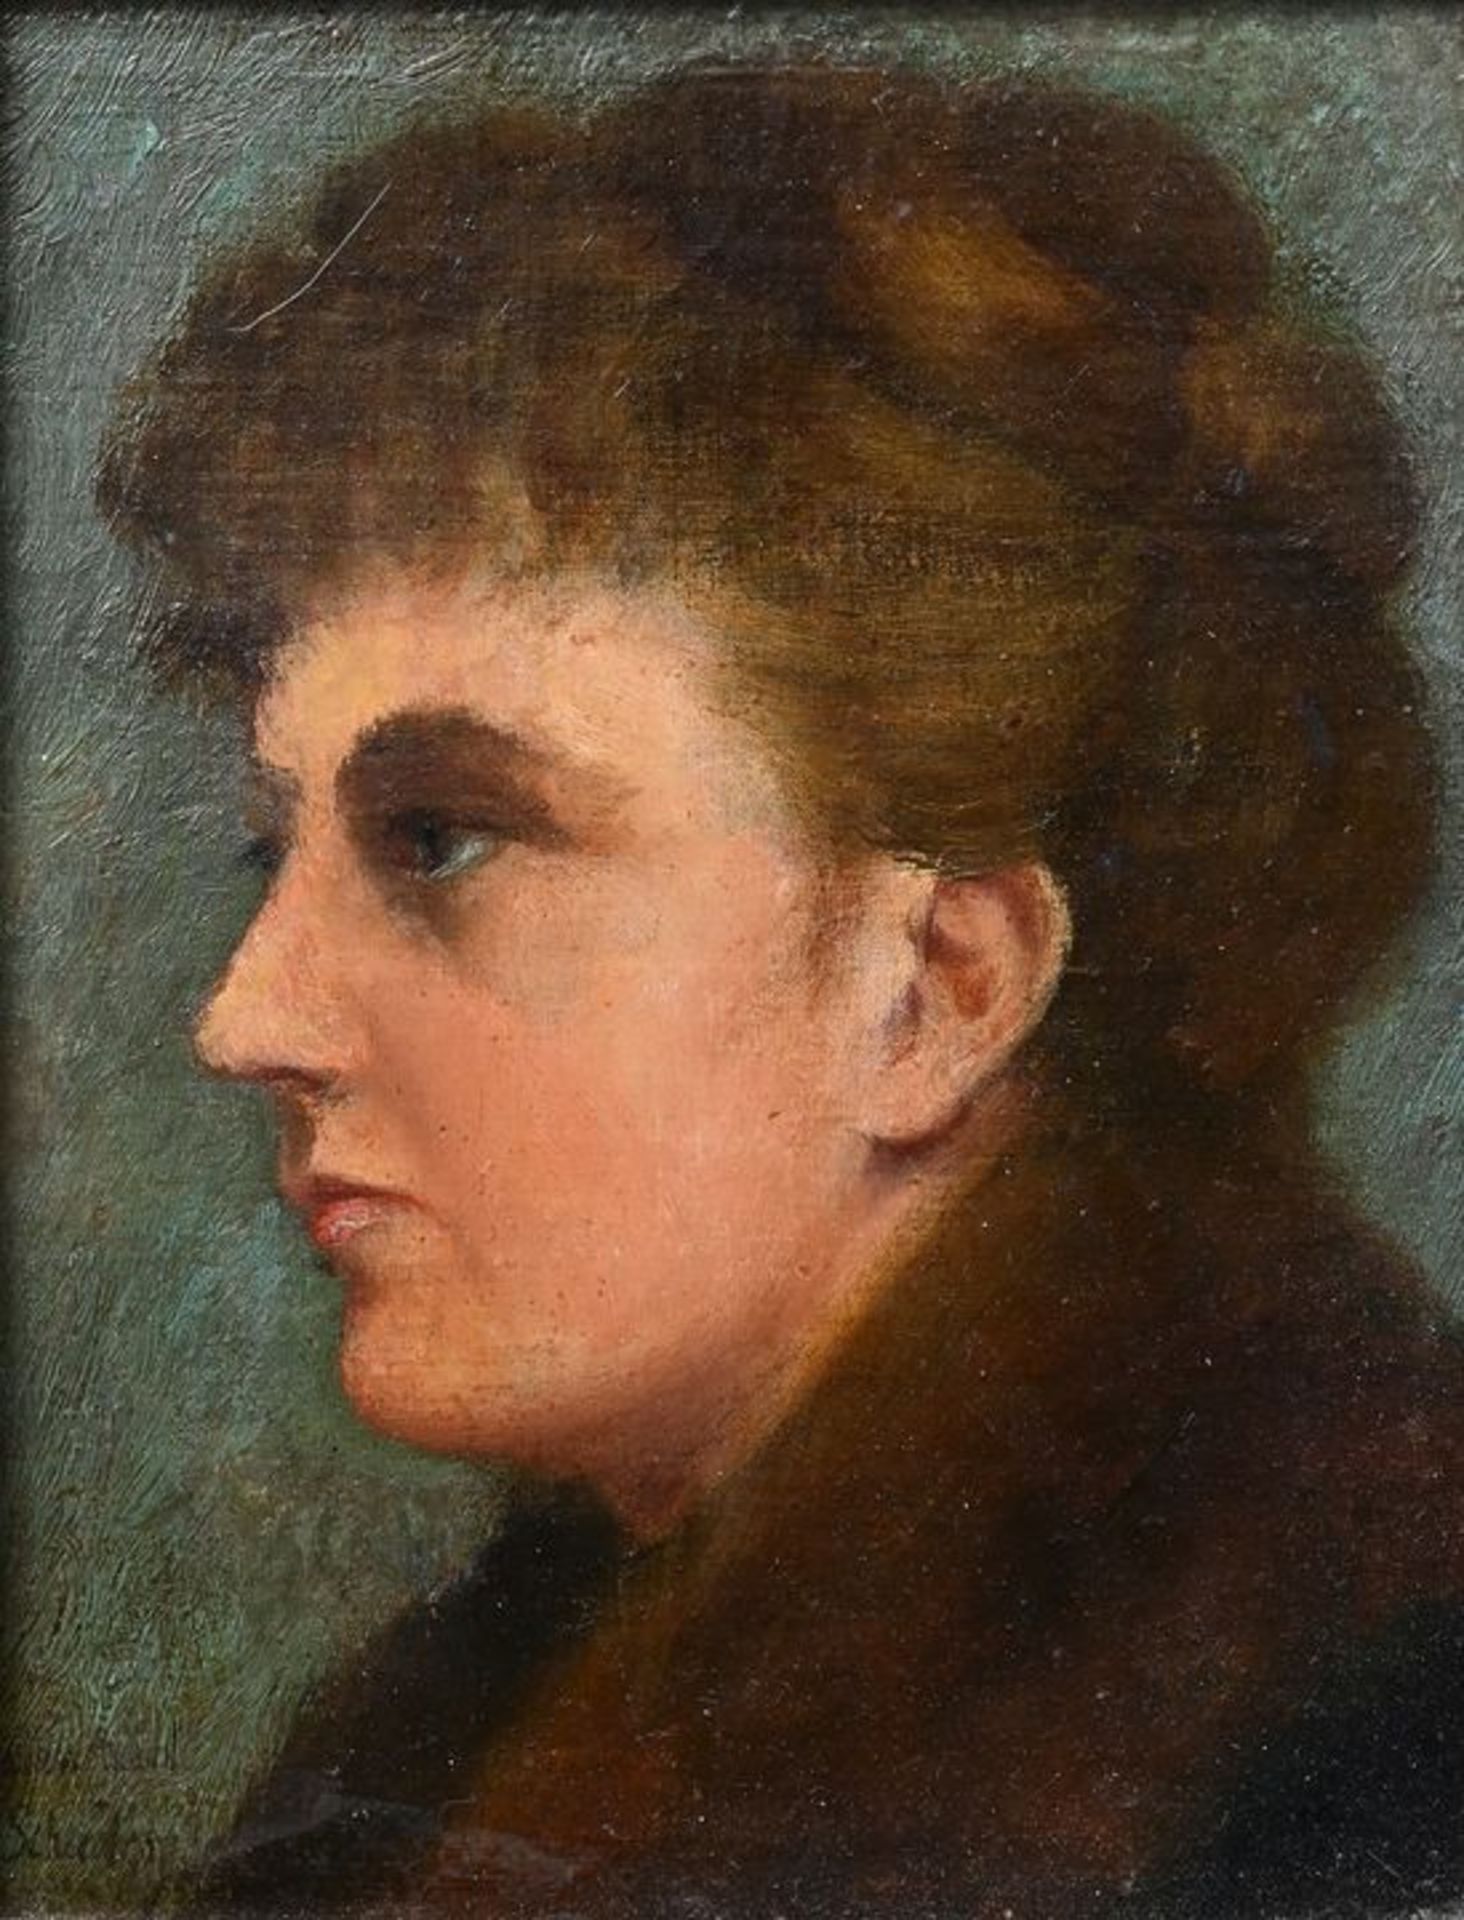 Damenbildnis/ a ladie's portrait